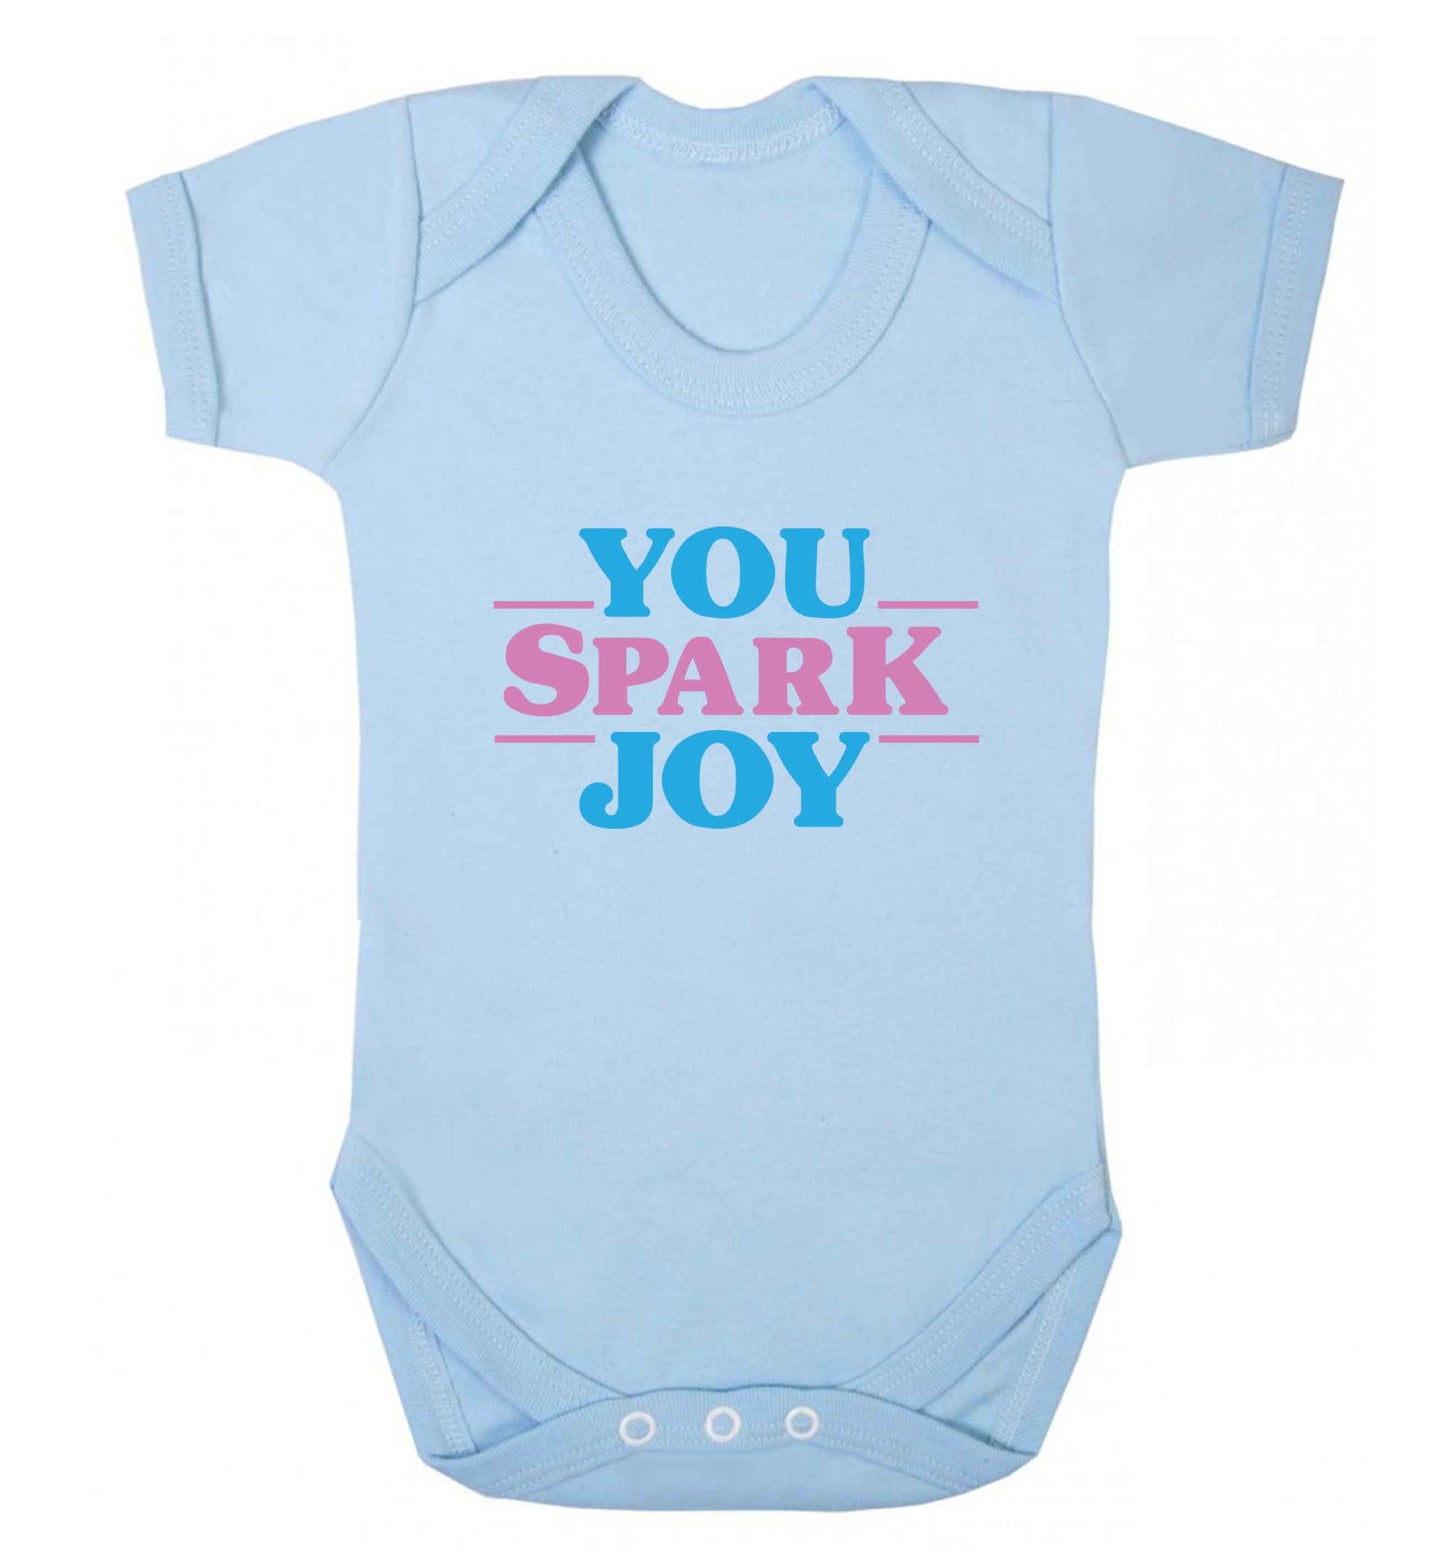 You spark joy baby vest pale blue 18-24 months